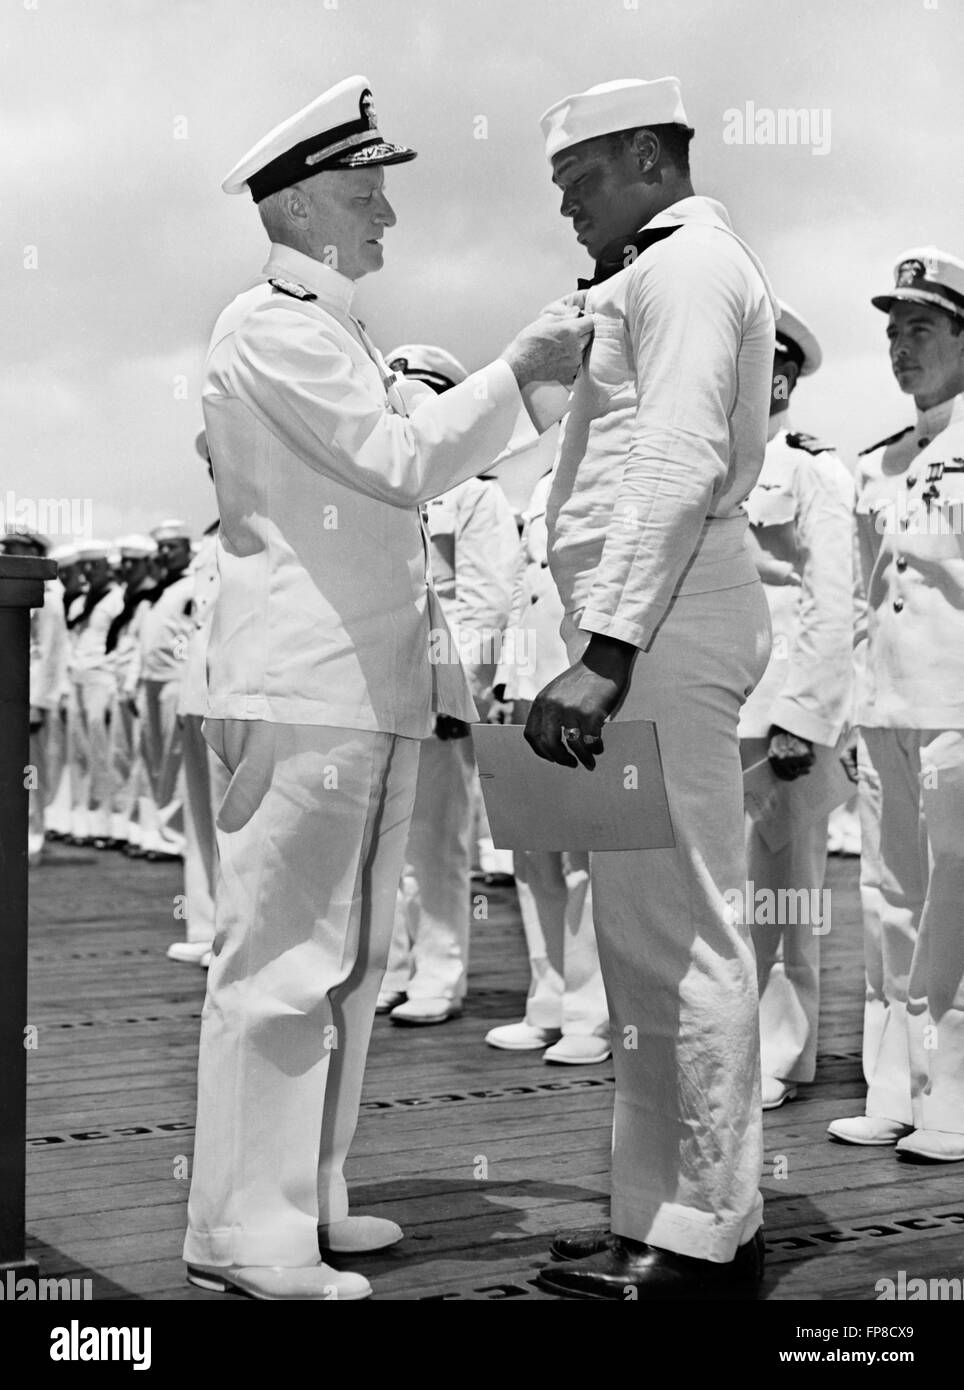 Admiral Chester W. Nimitz, Oberbefehlshaber, Pazifikflotte, pinning das Navy Cross auf Doris "Dorie" Miller, Steward Mate 1/c, bei einer Zeremonie an Bord ein Kriegsschiff der US-Marine in Pearl Harbor am 27. Mai 1942. Miller hat das Navy Cross für seine Tapferkeit während des Angriffs auf Pearl Harbor am 7. Dezember 1941 und war der erste schwarze Amerikaner, die Auszeichnung zu erhalten. Offizielle US-Marine Foto. Stockfoto